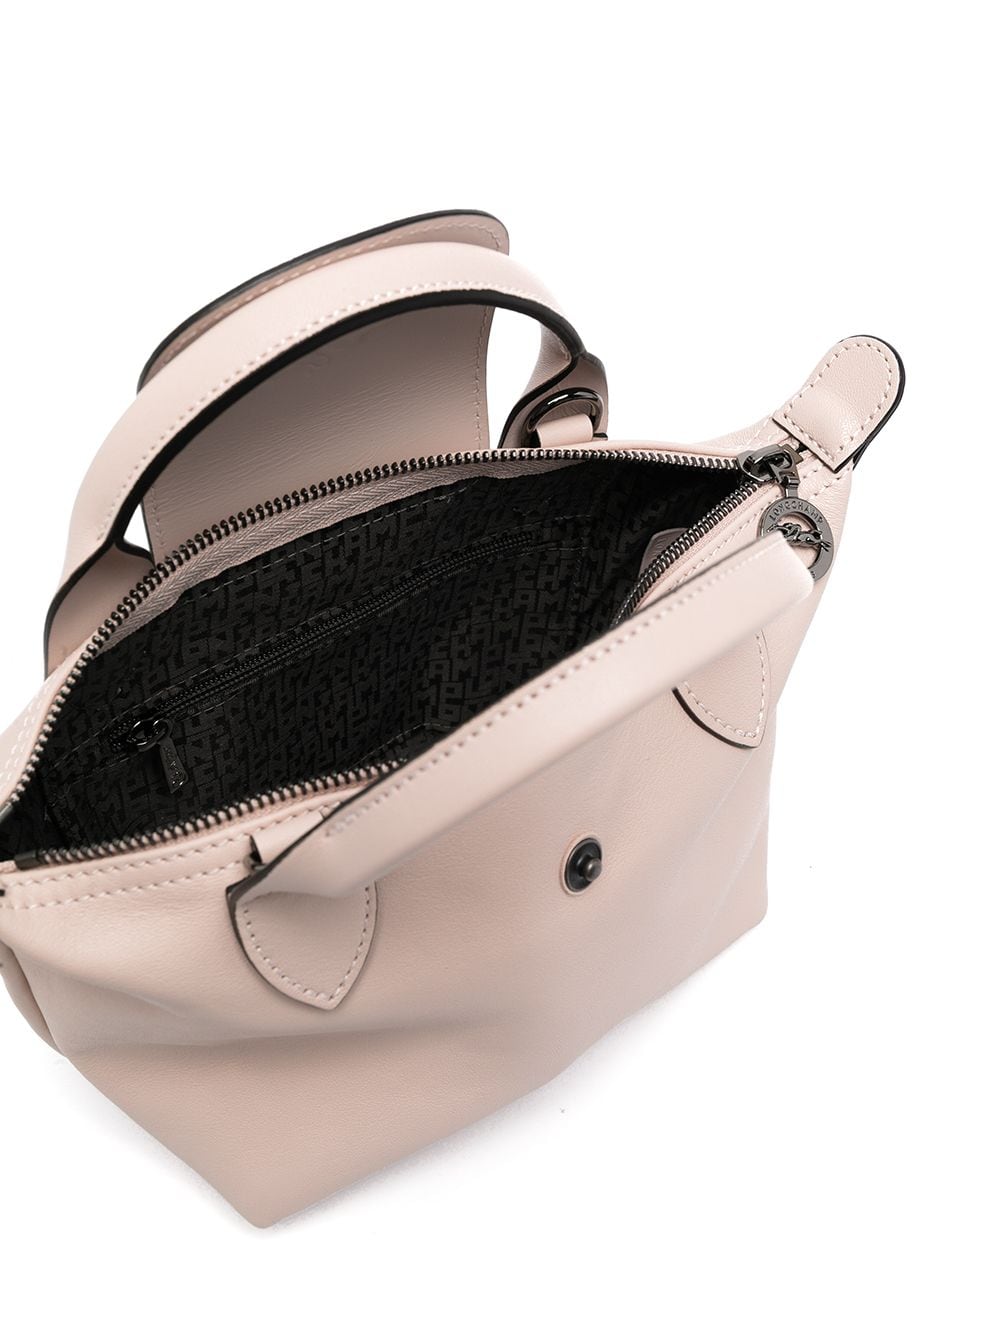 фото Longchamp мини-сумка le pliage cuir